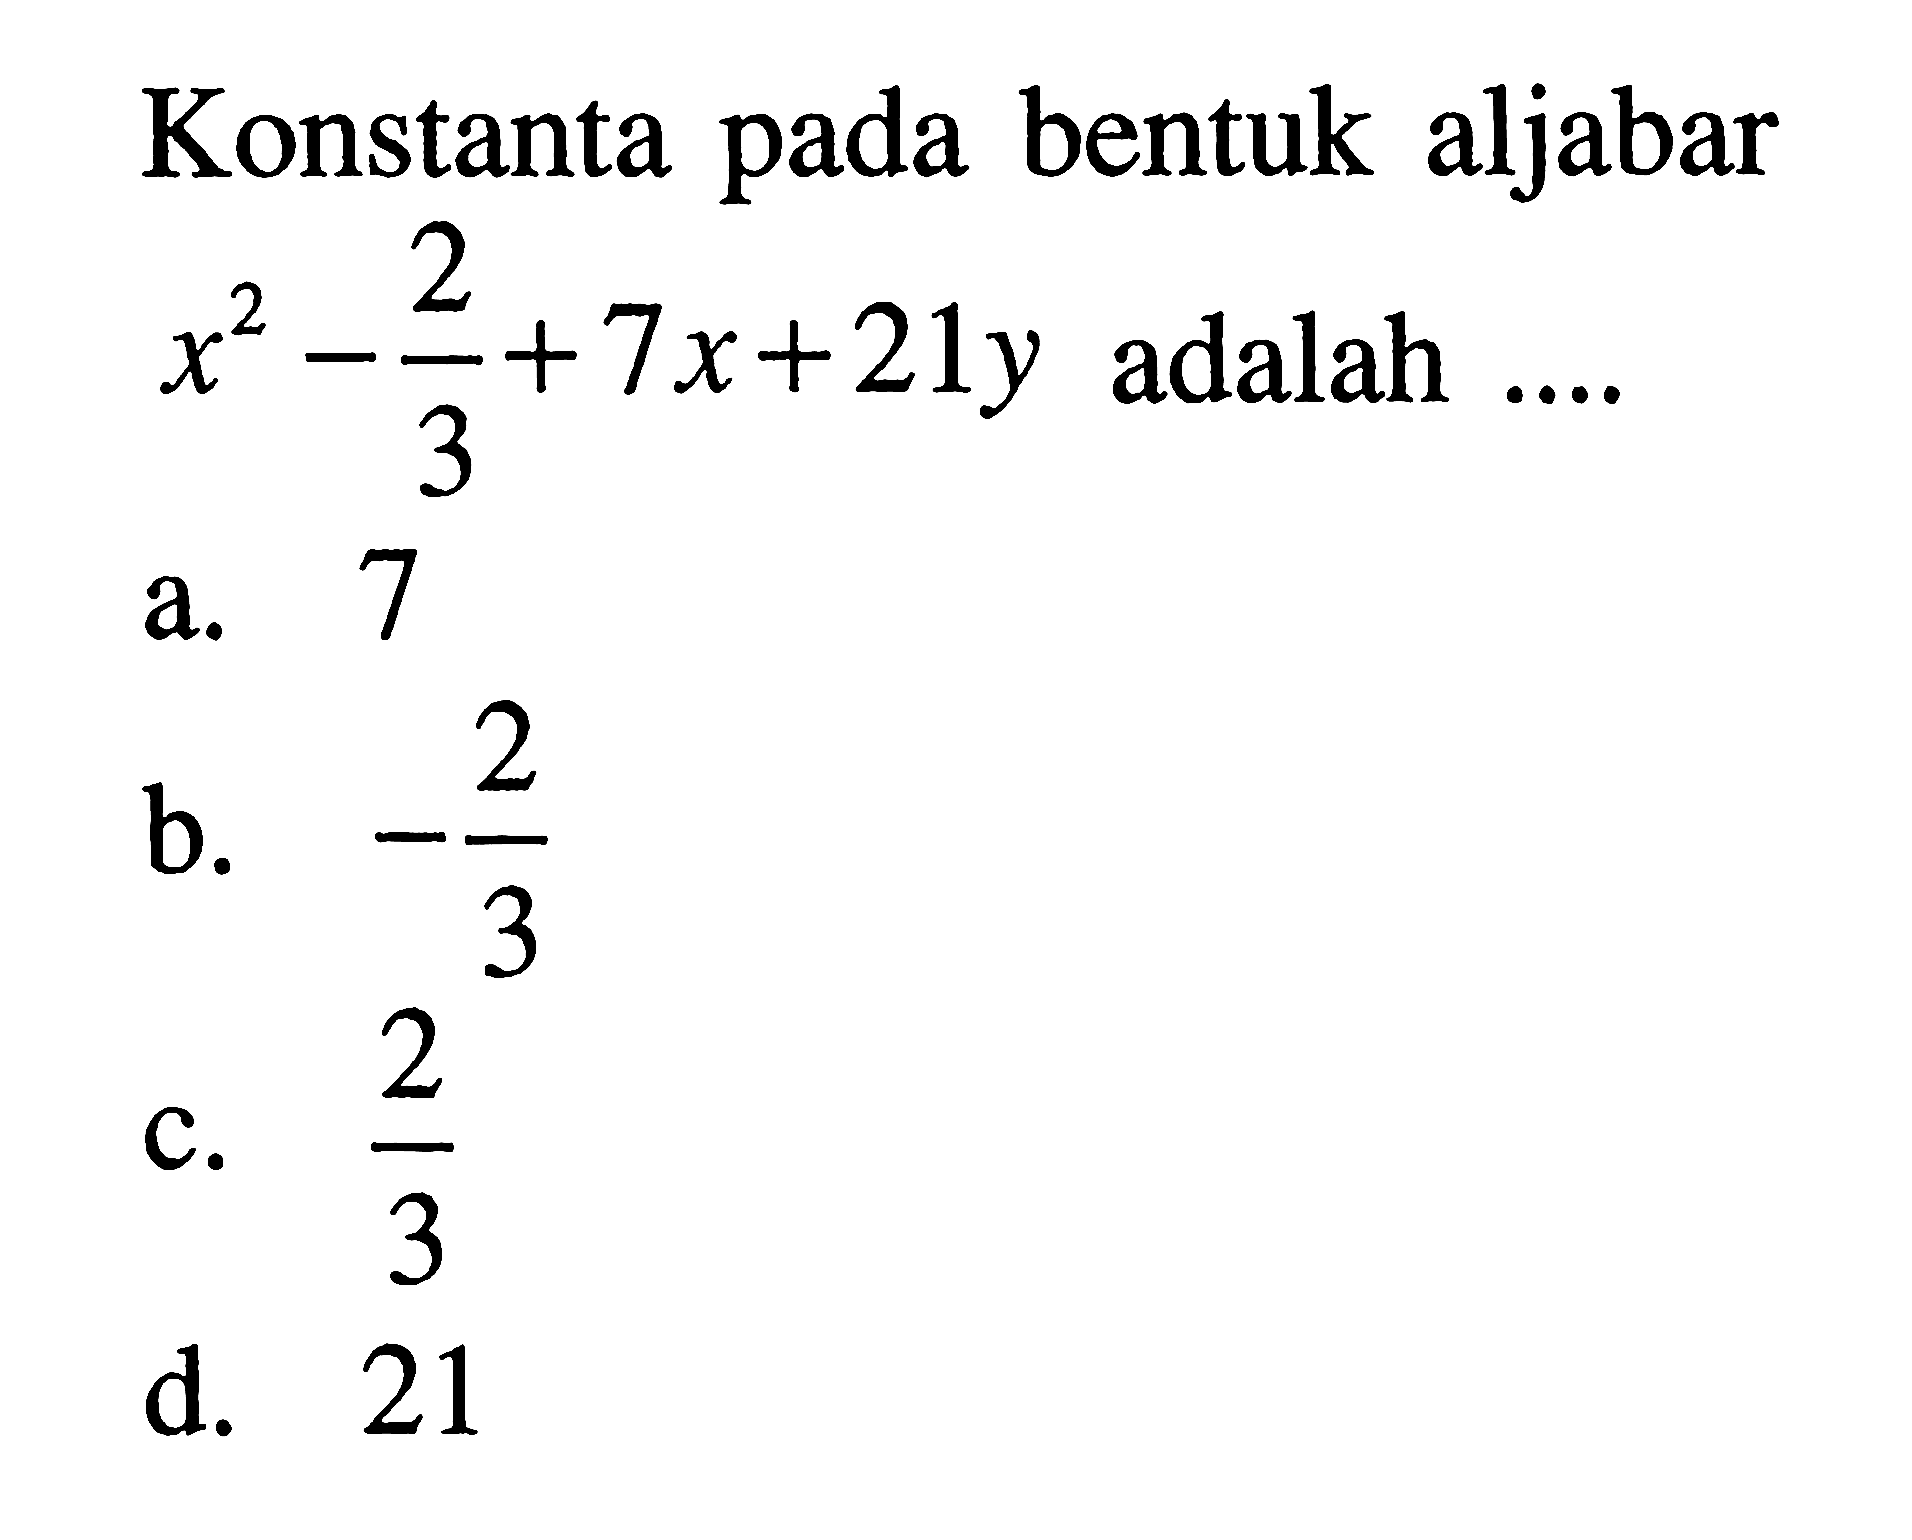 Konstanta pada bentuk aljabar x^2 - 2/3 + 7x + 21y adalah a. 7 b. -2/3 c. 2/3 d. 21